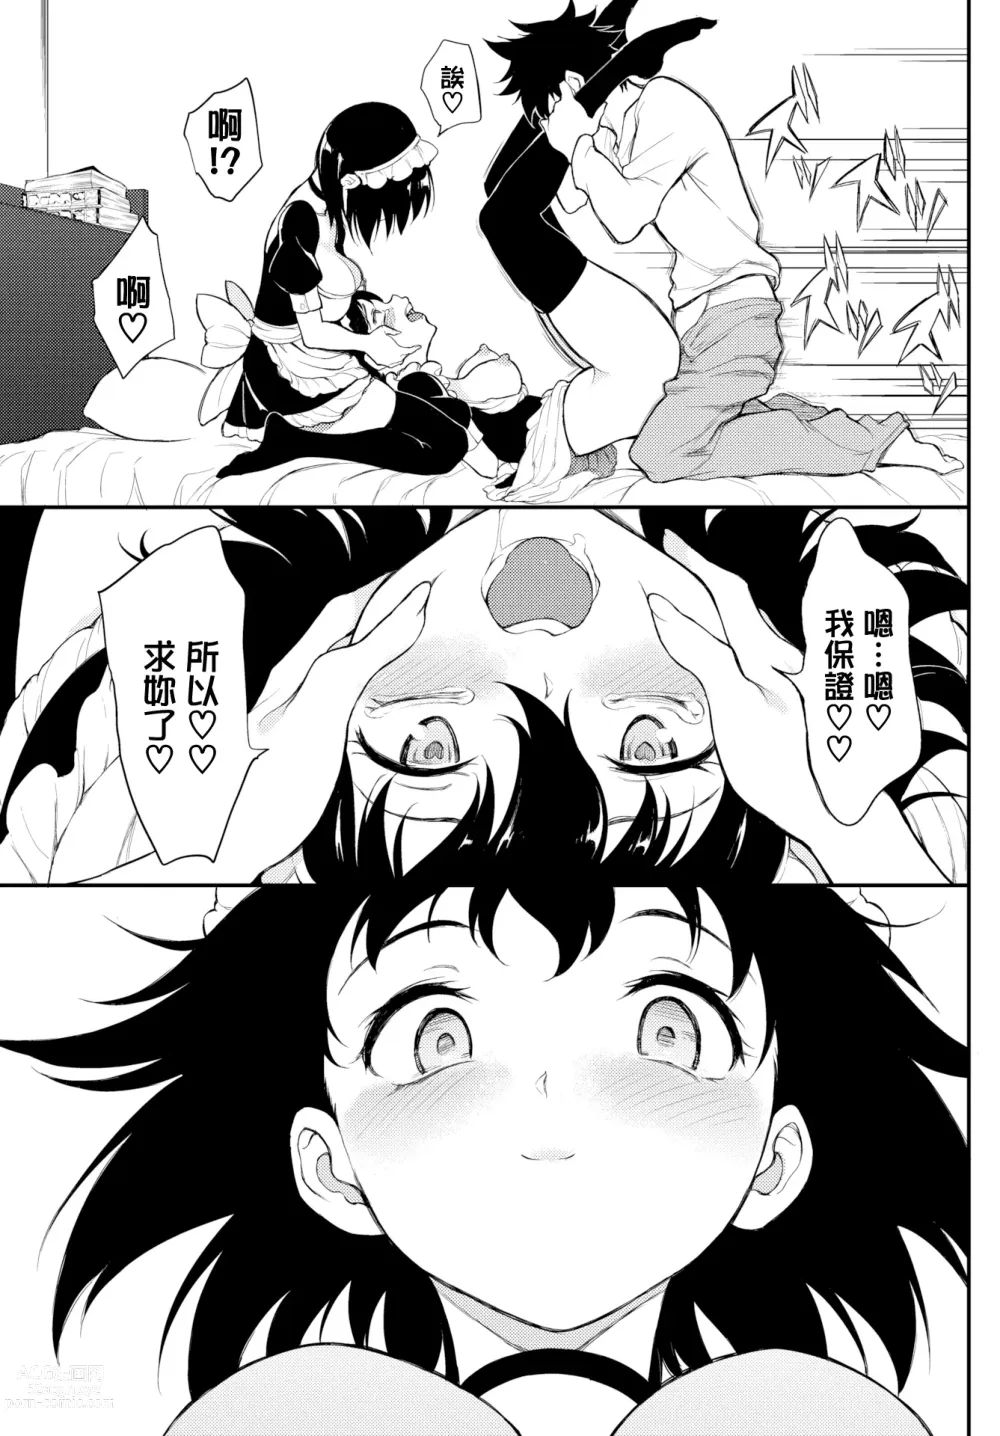 Page 152 of doujinshi Kaede & Suzu 1~6